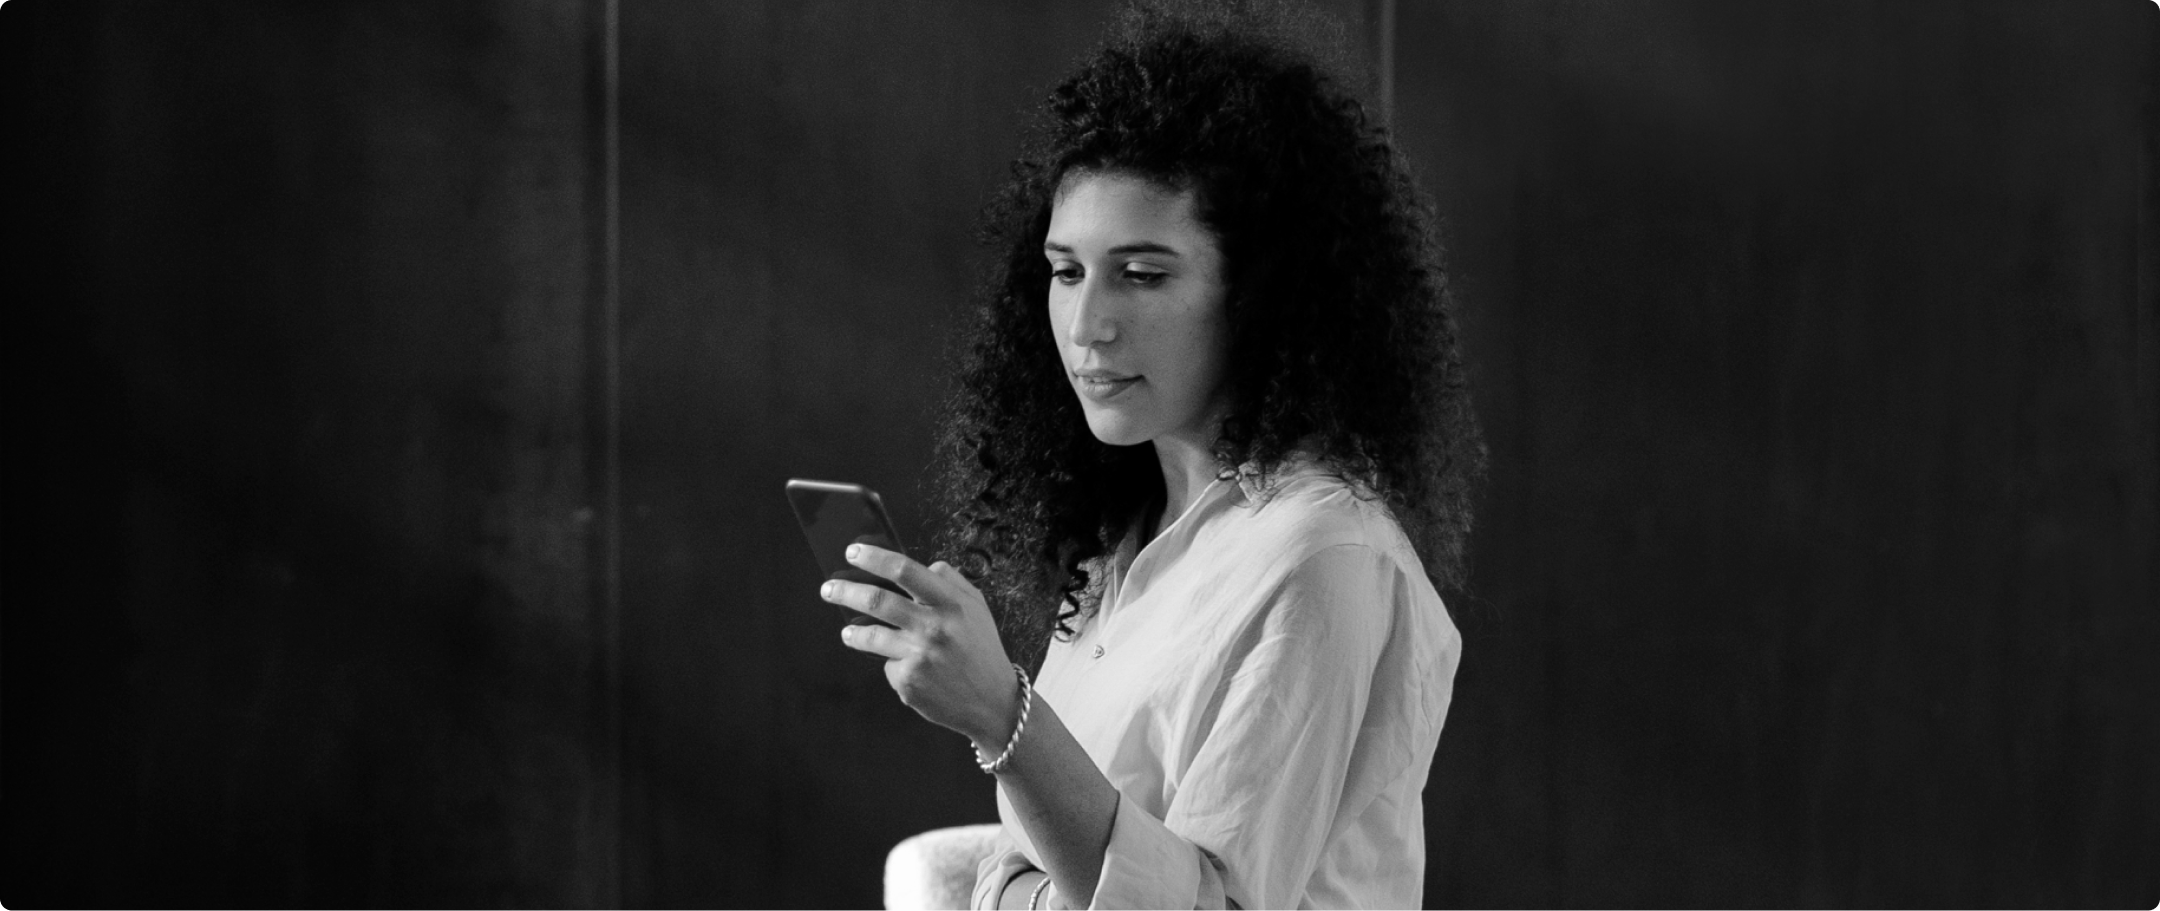 Fotografia em preto e branco de mulher branca com cabelo preso e blusa branca, segurando um celular com a mão esquerda